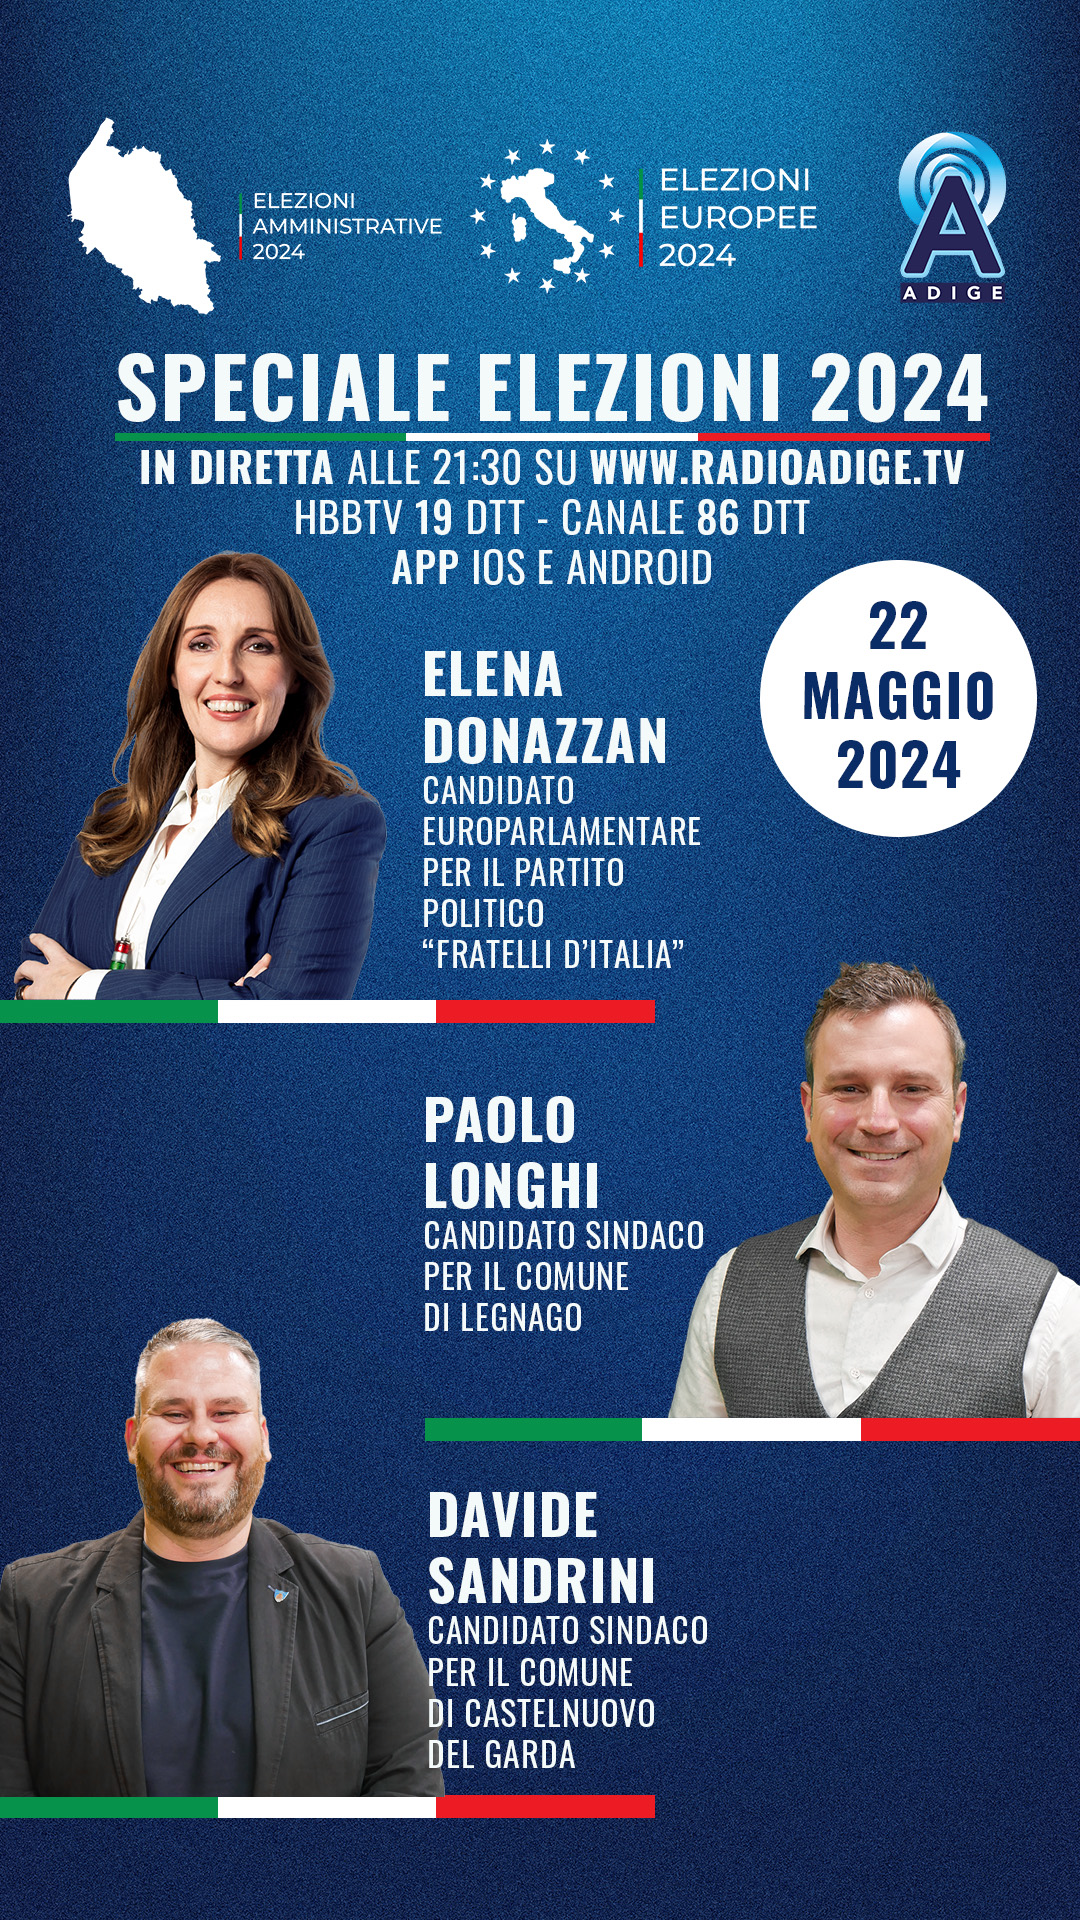 Speciale Elezioni 2024, questa sera a RadioAdige.Tv Elena Donazzan, Paolo Longhi e Davide Sandrini